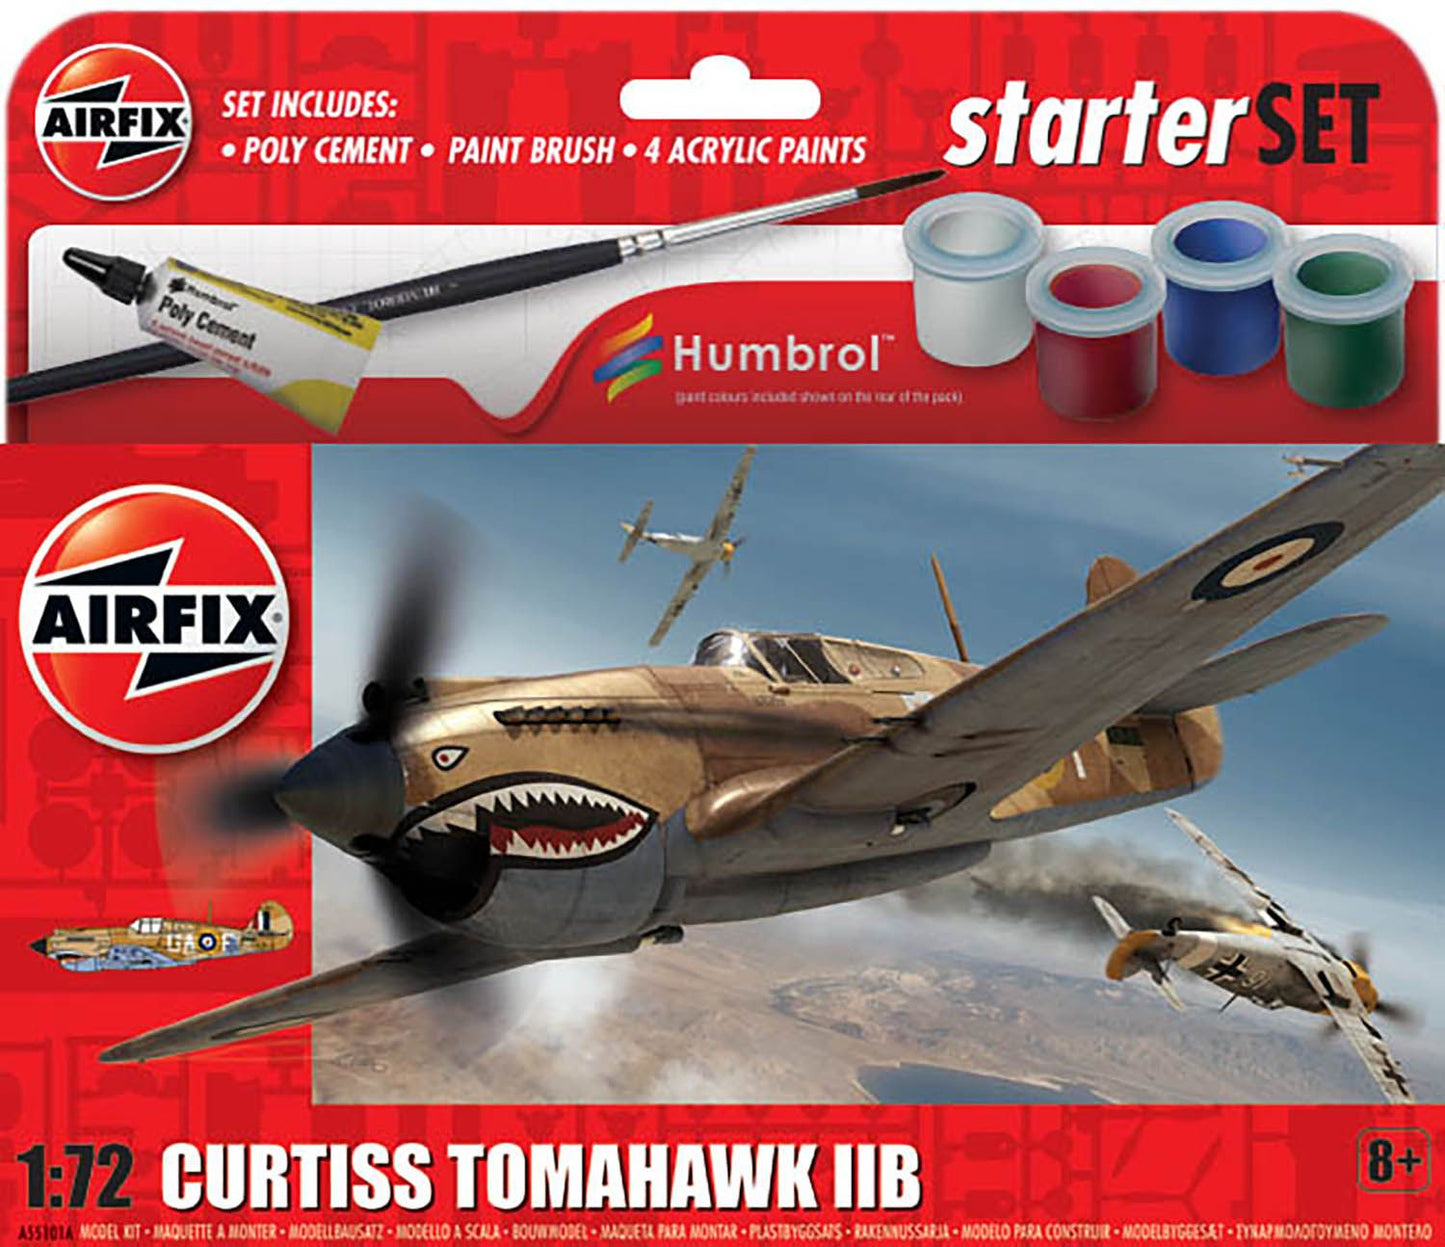 Airfix 1/72nd Scale Curtiss Tomahawk IIB Starter Set